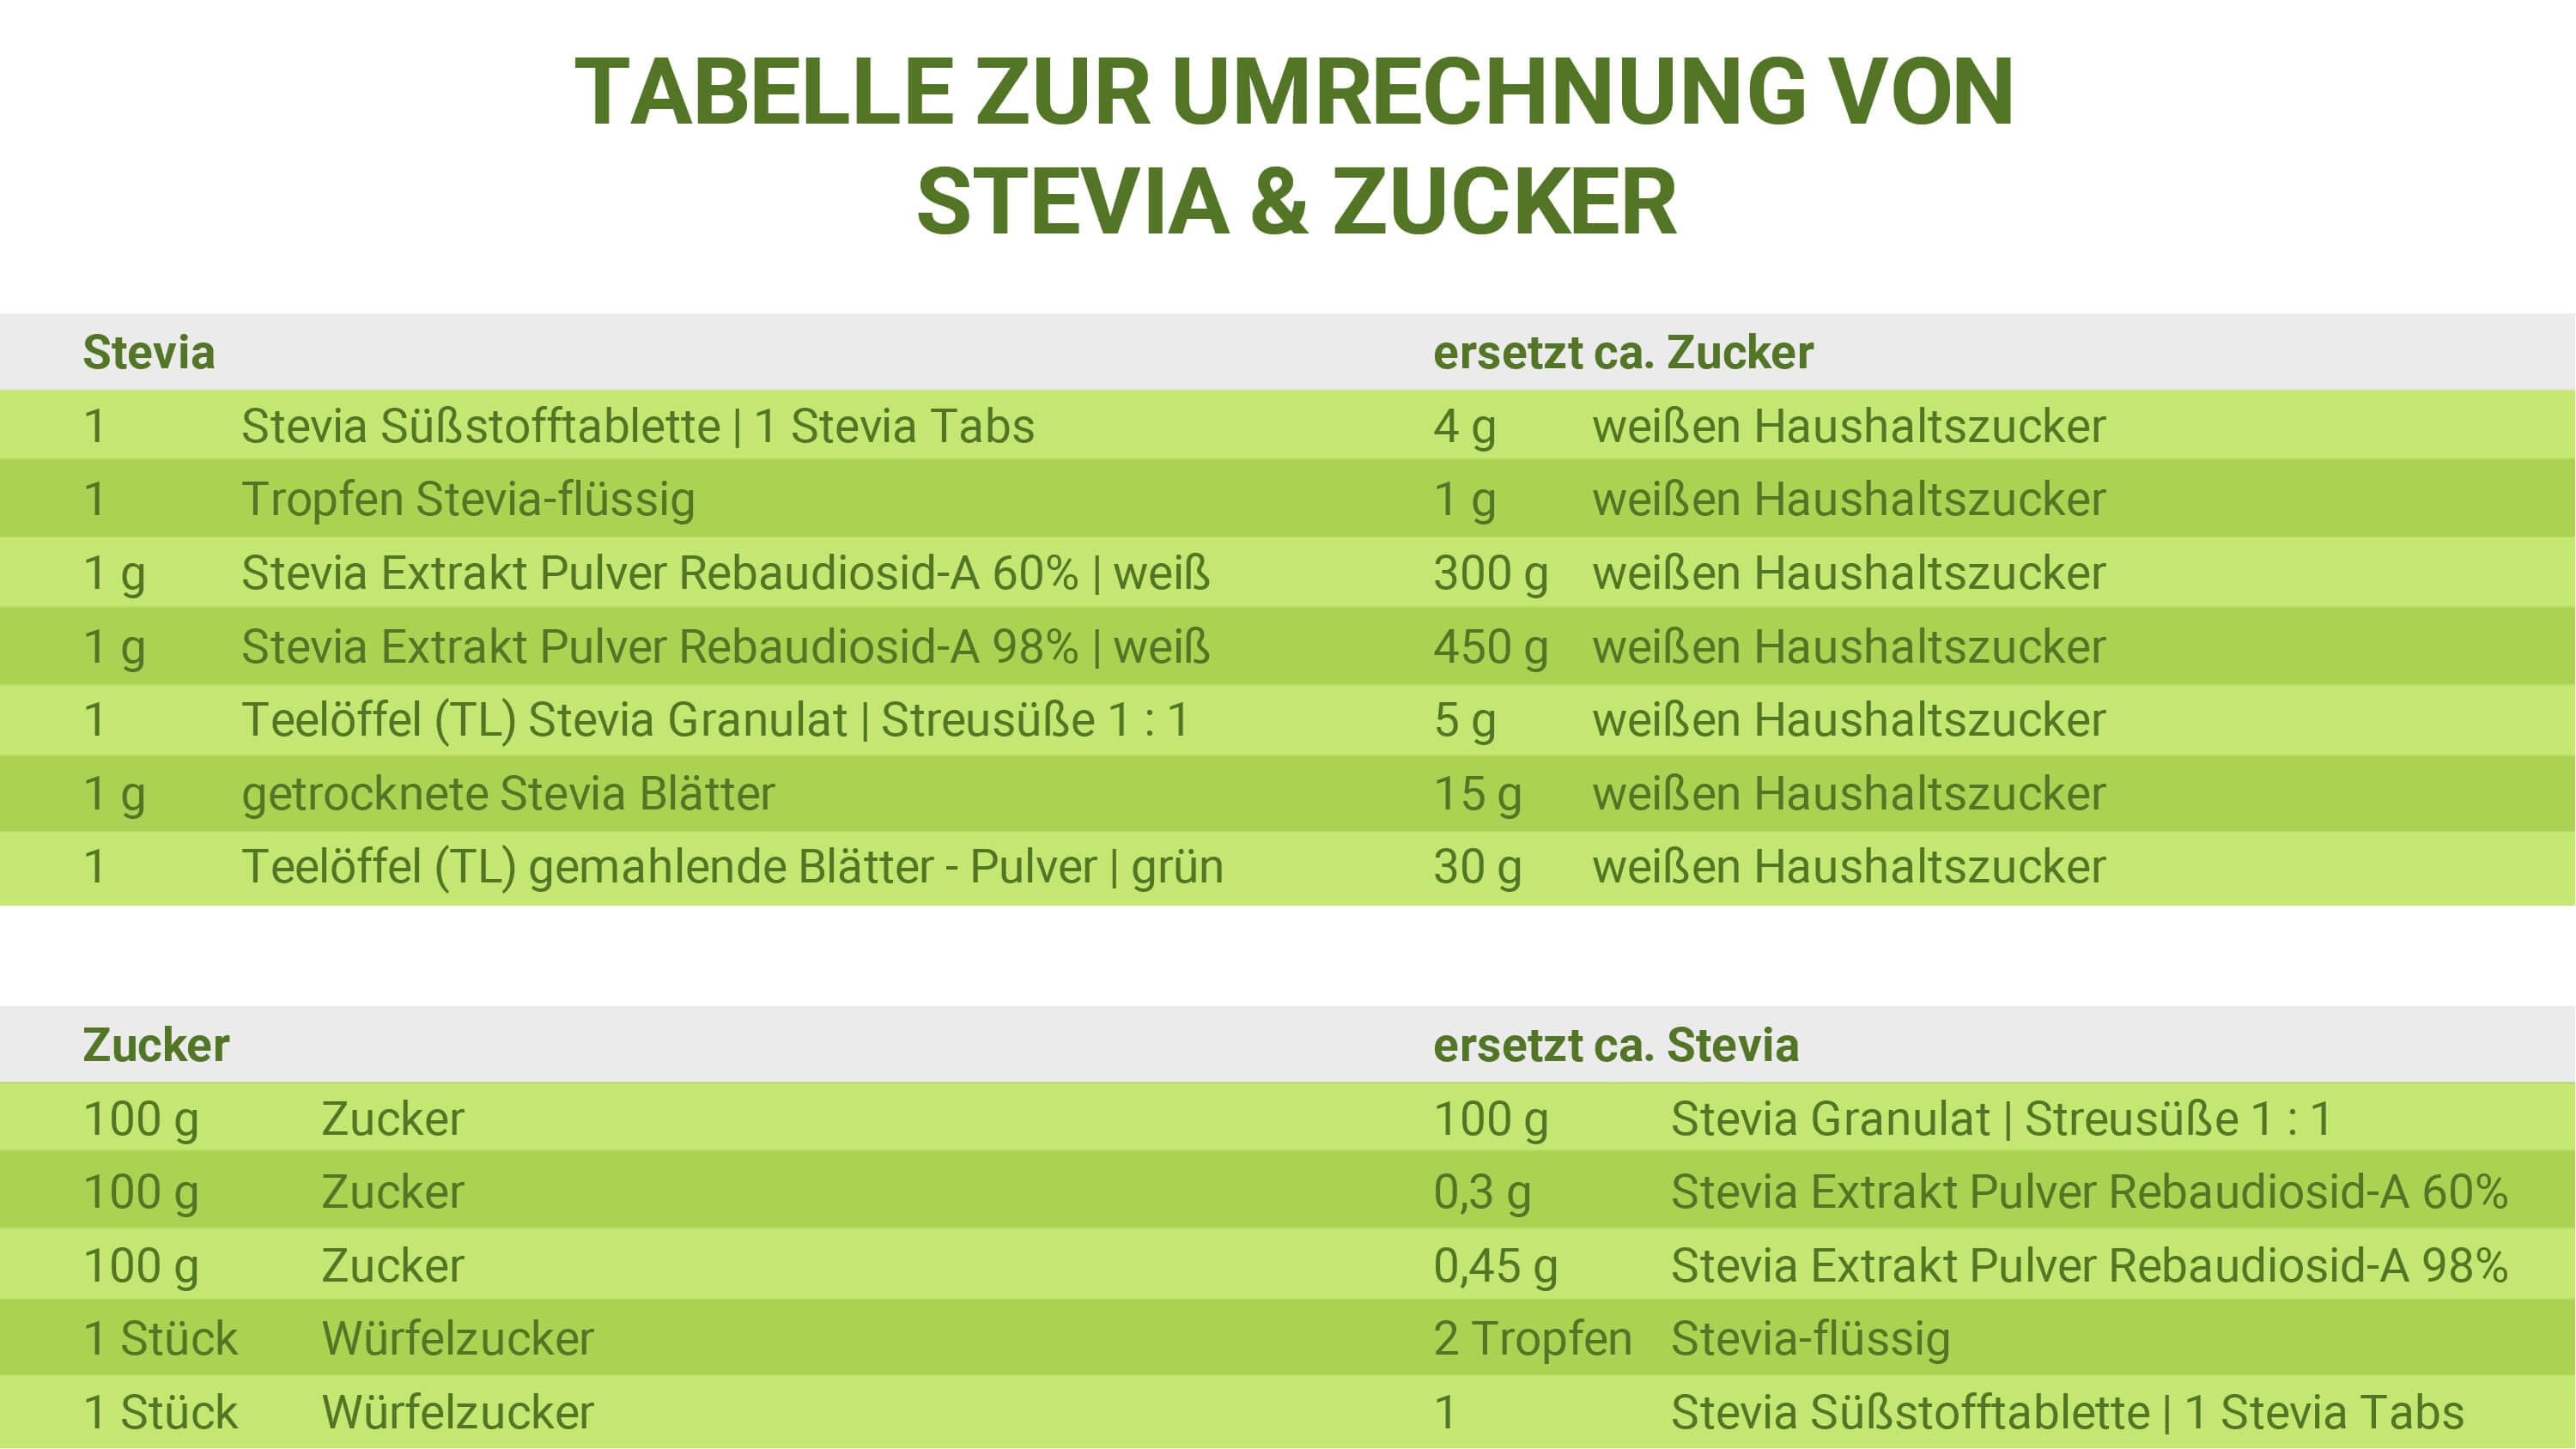 Zucker-Stevia Umrechnungstabelle zur richtigen Dosierung von Stevia